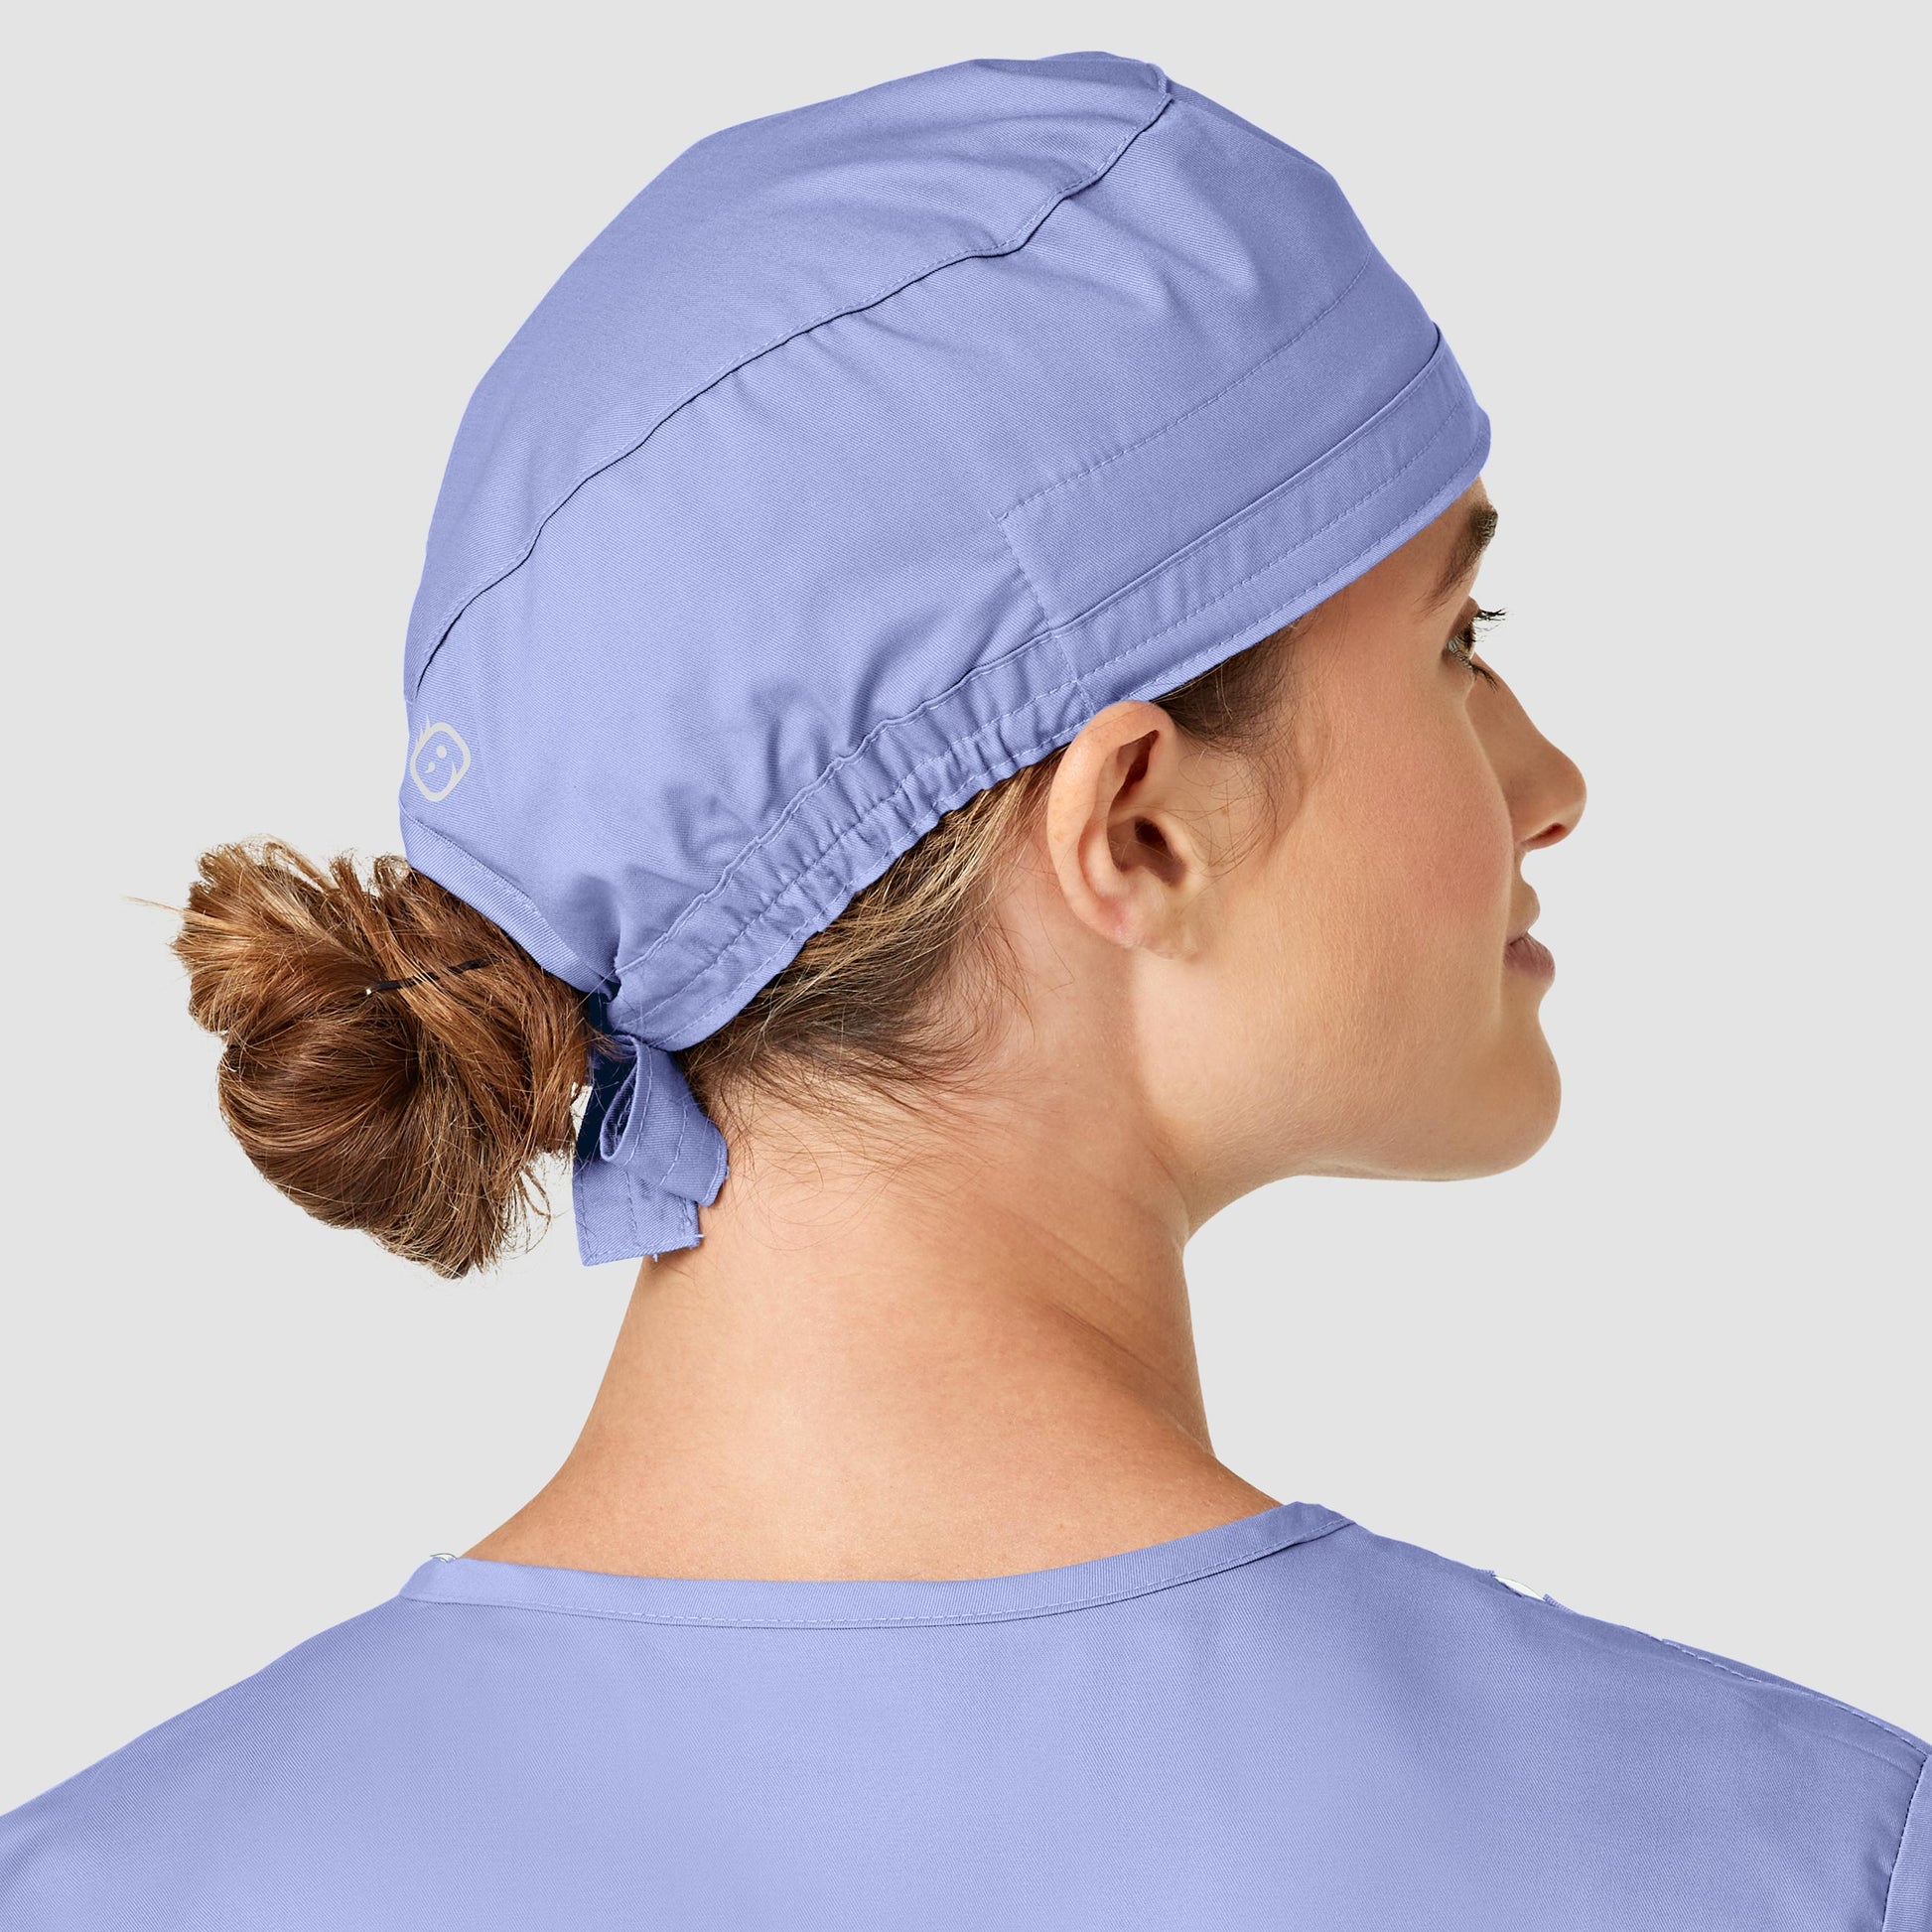 Femme portant un calot médical WonderWink Bleu ciel, facile à entretenir et anti-contaminations